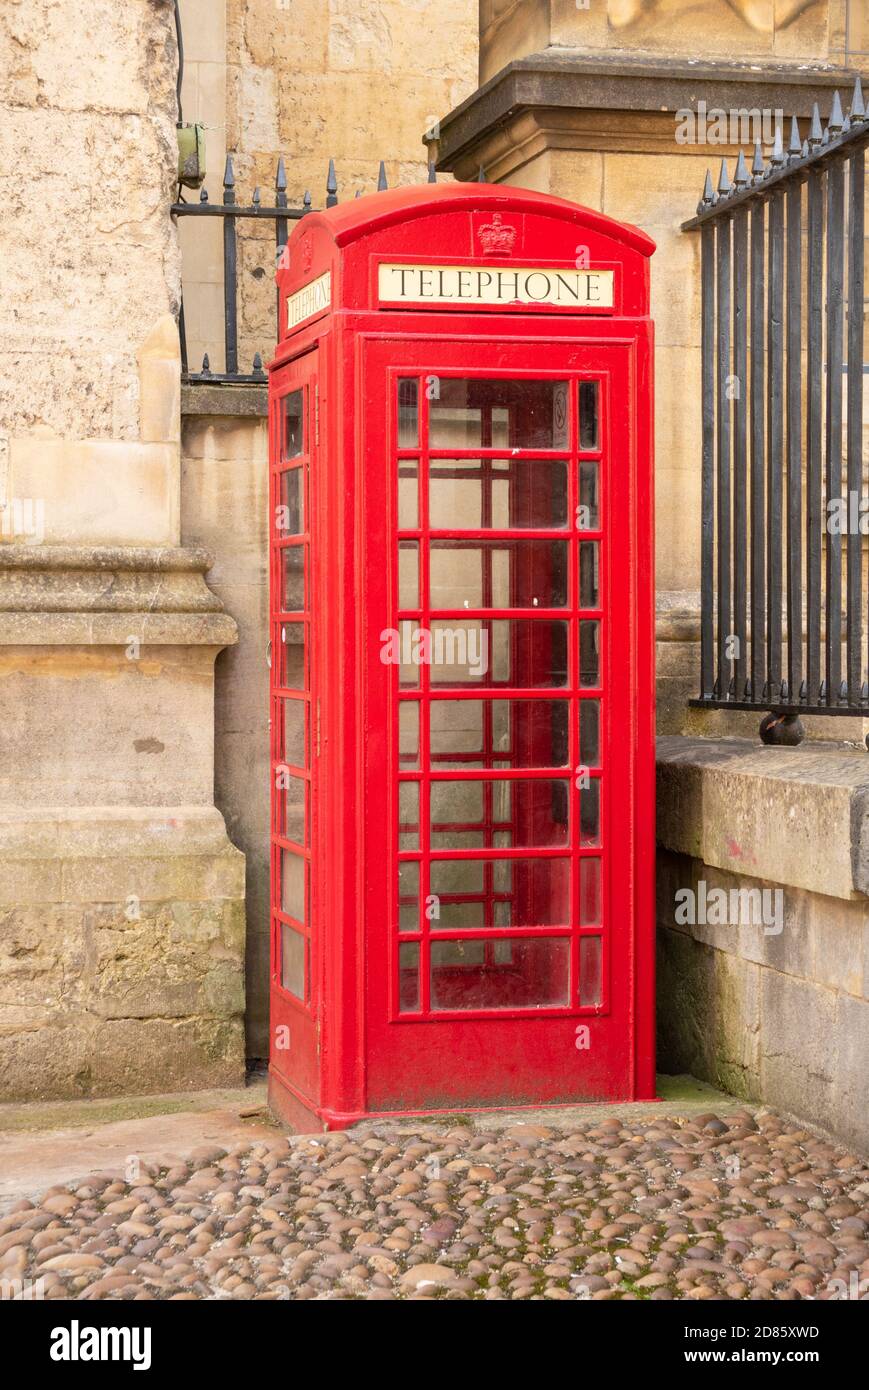 Boîte téléphonique rouge, kiosque téléphonique rouge, Oxford Oxfordshire Angleterre GB Europe Banque D'Images